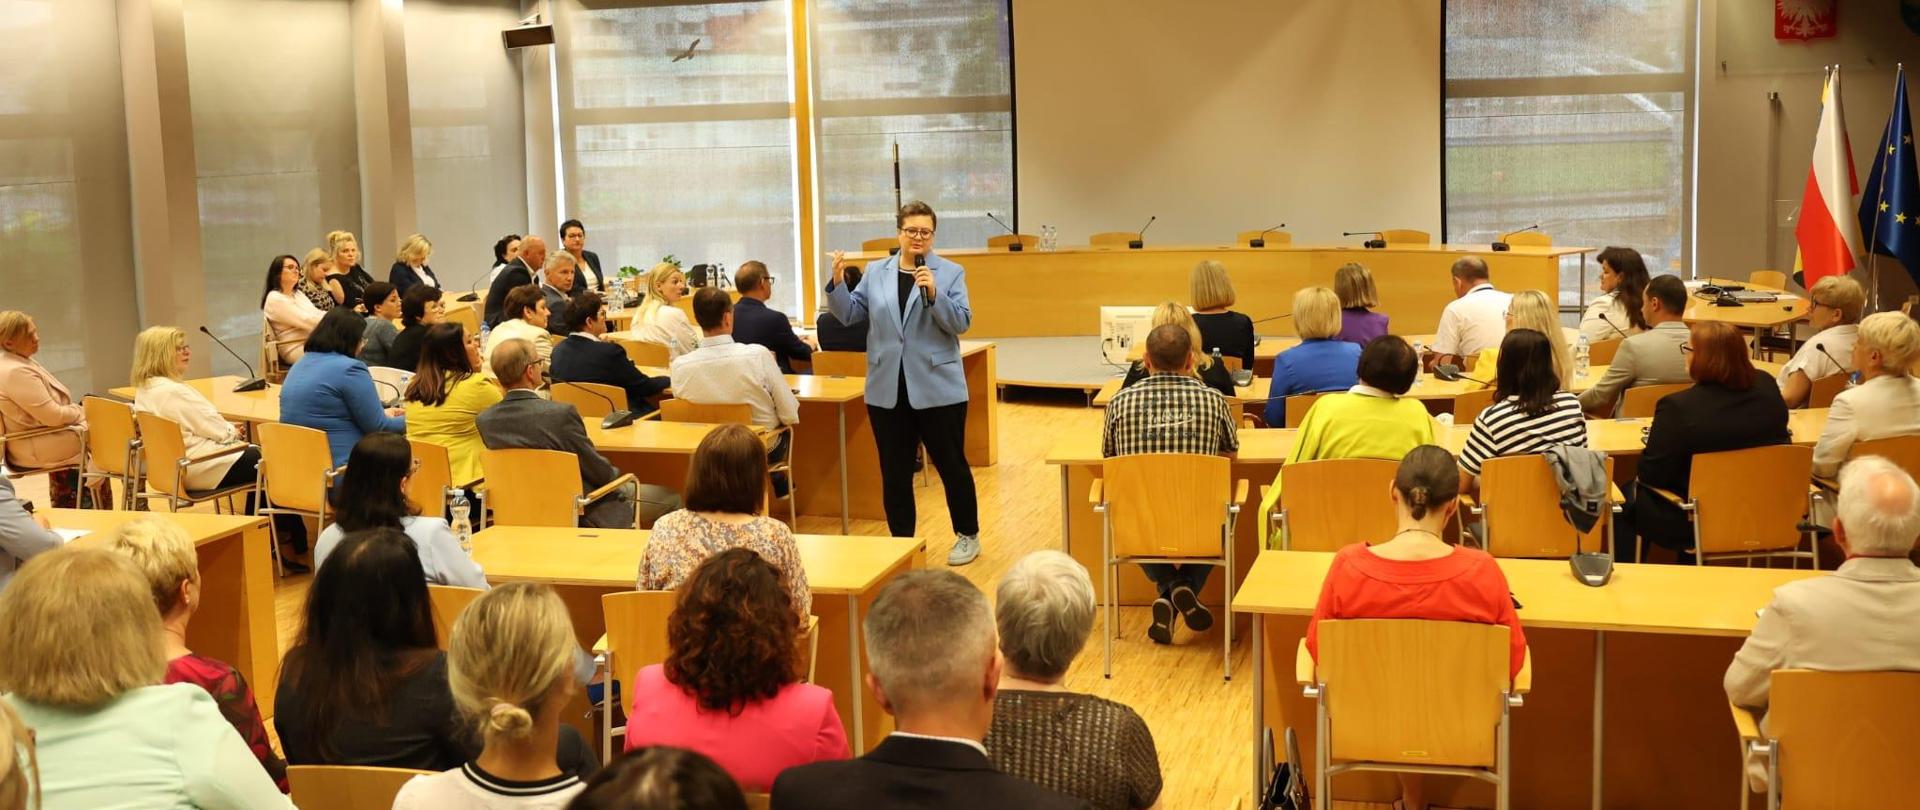 Sekretarz stanu w Ministerstwie Edukacji Narodowej Katarzyna Lubnauer. Na zdjęciu trzyma mikrofon i jest w trakcie przemówienia. Dookoła widzimy pozostałych uczestników spotkania, którzy siedzą przy biurkach w Sali Orła Białego w Urzędzie Marszałkowskim. 